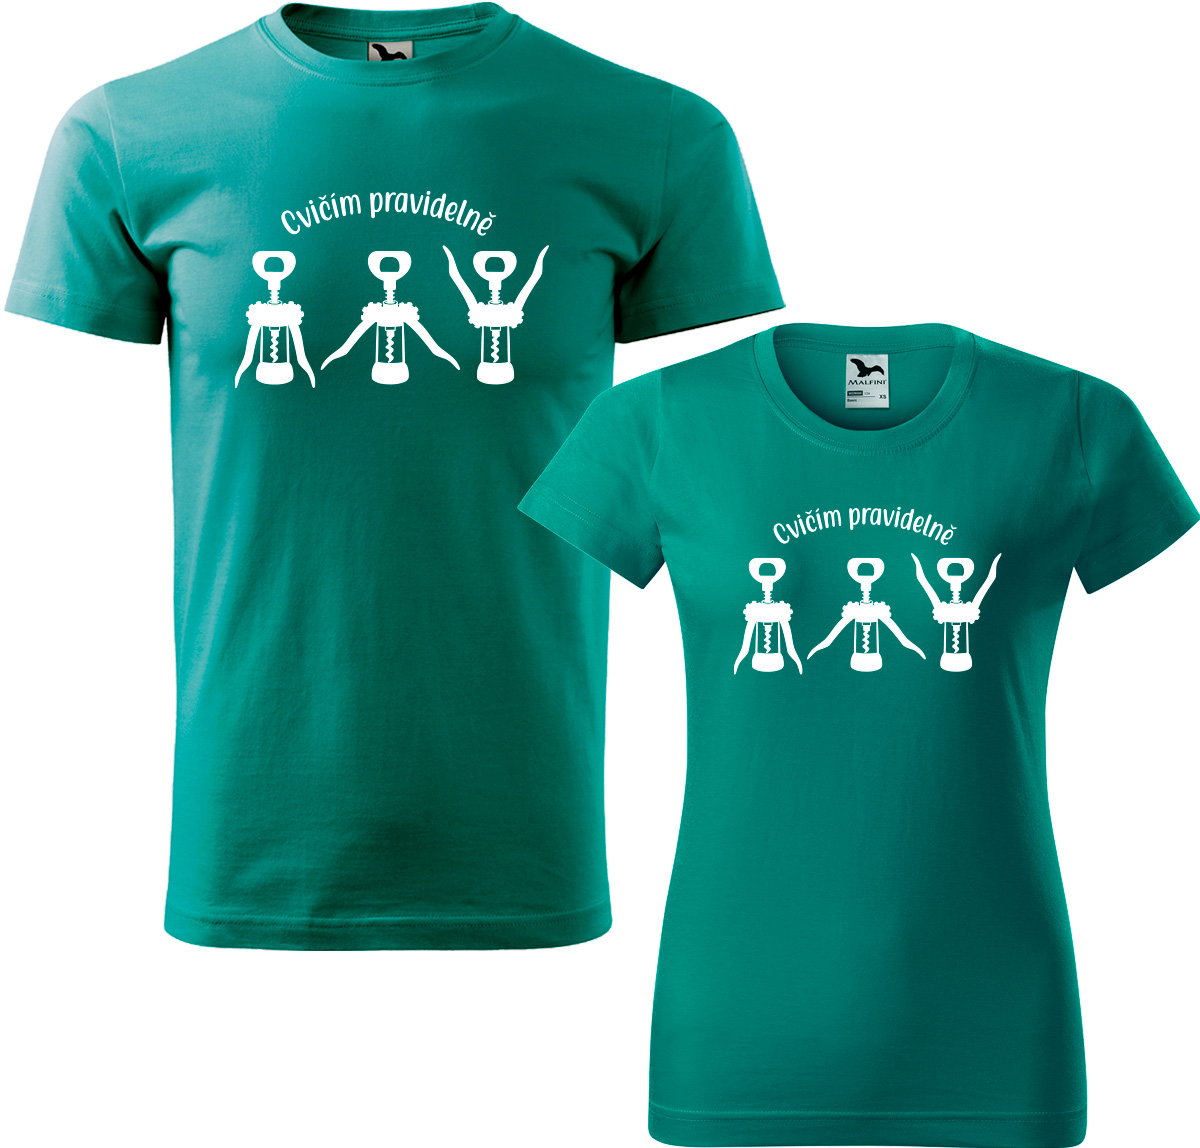 Trička pro páry - Cvičím pravidelně Barva: Emerald (19), Velikost dámské tričko: XL, Velikost pánské tričko: XL